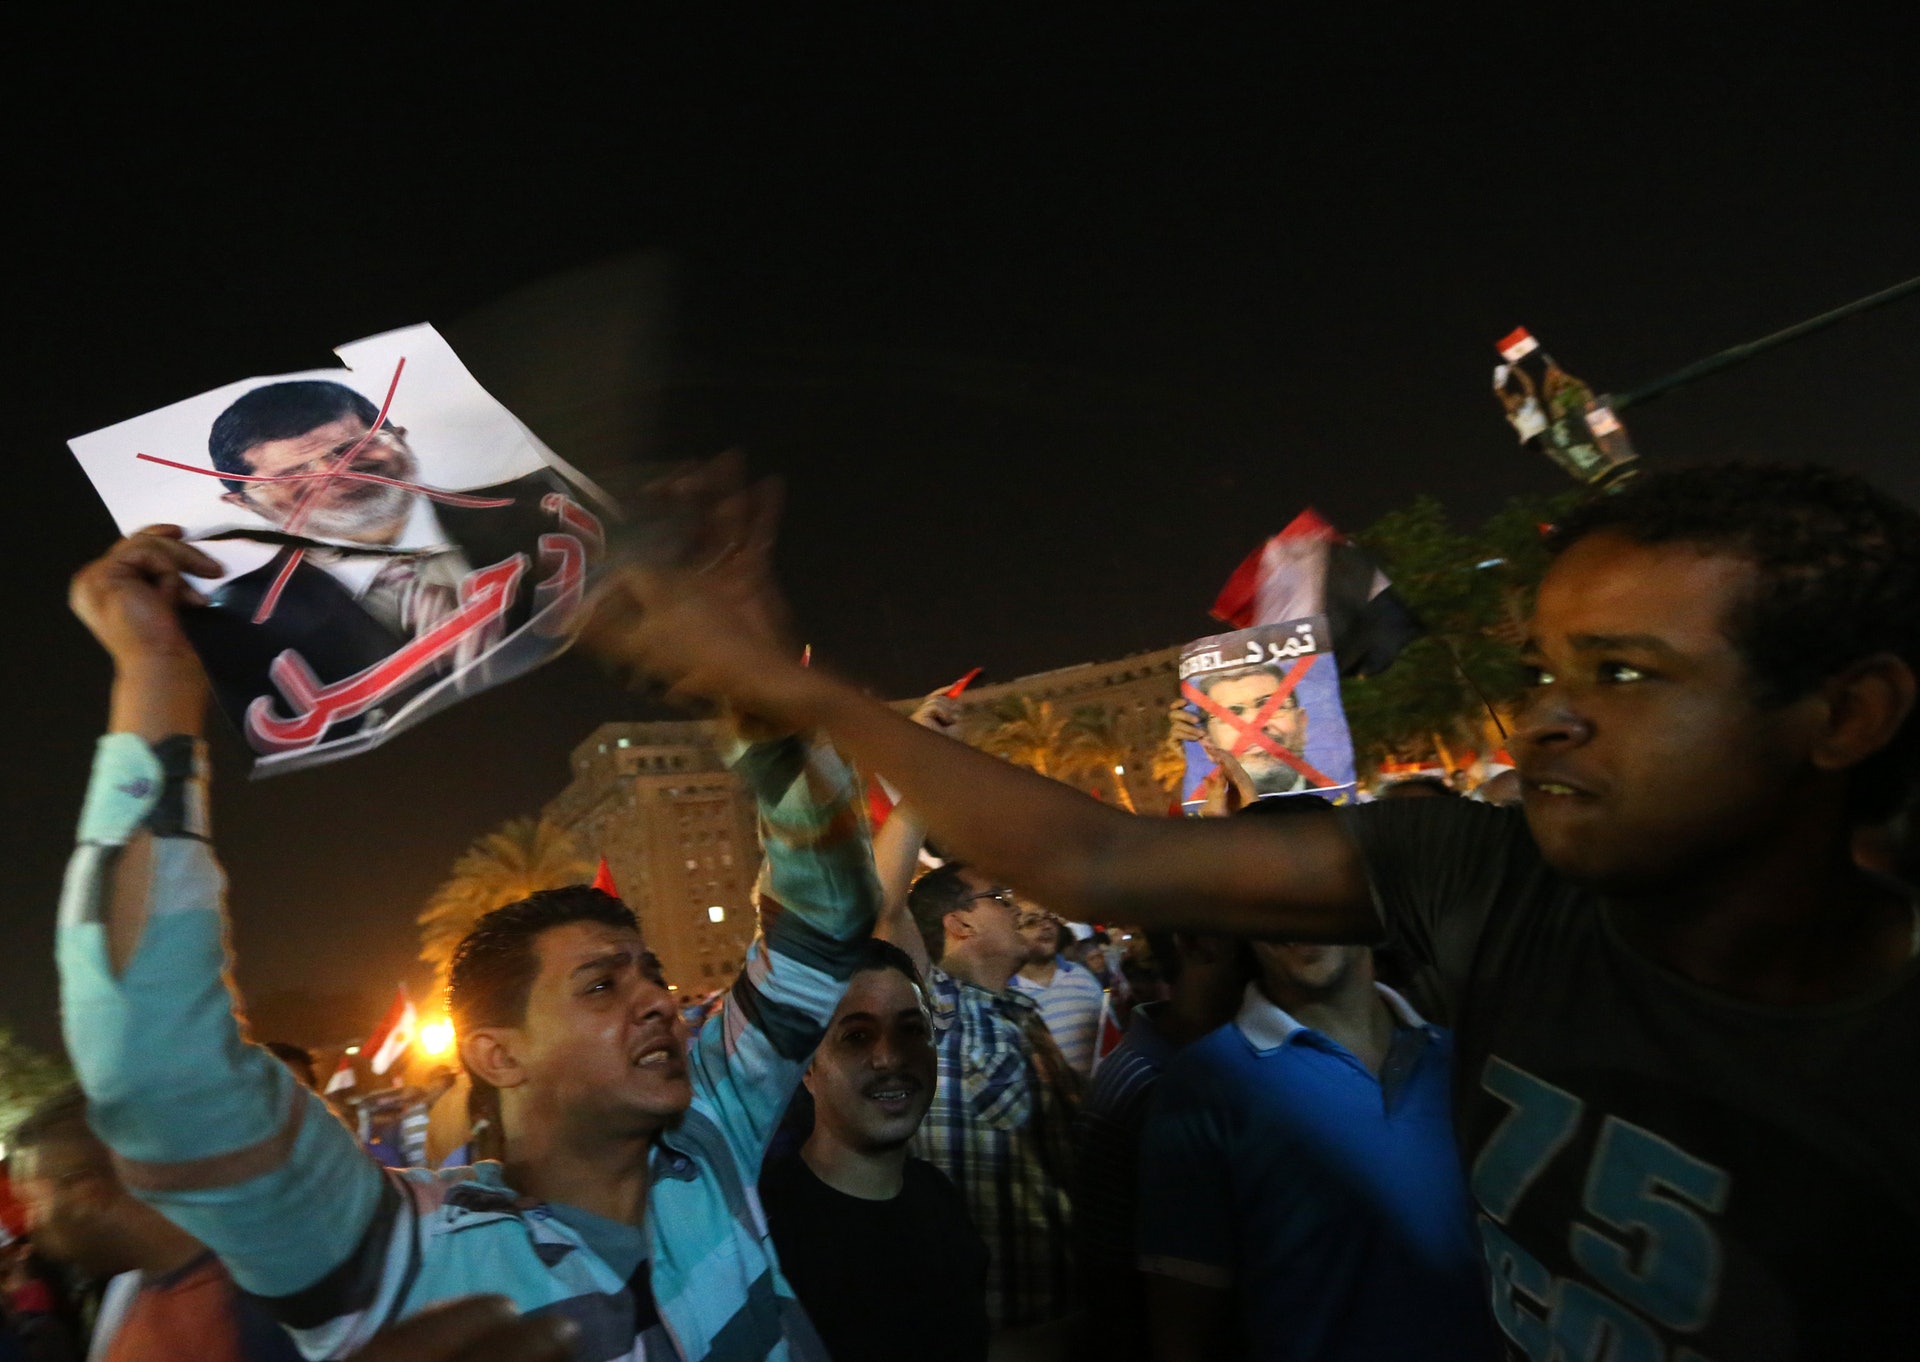 穆爾西於2012年勝出大選，是埃及首位民選總統，接任鐵腕統治埃及30年、最後被民眾推翻的前總統穆巴拉克（Hosni Mubarak）。2013年穆爾西被軍方發動政變推翻下台，結束僅一年的總統生涯。圖為2013年穆爾西反對者上街抗議他的統治。（視覺中國）